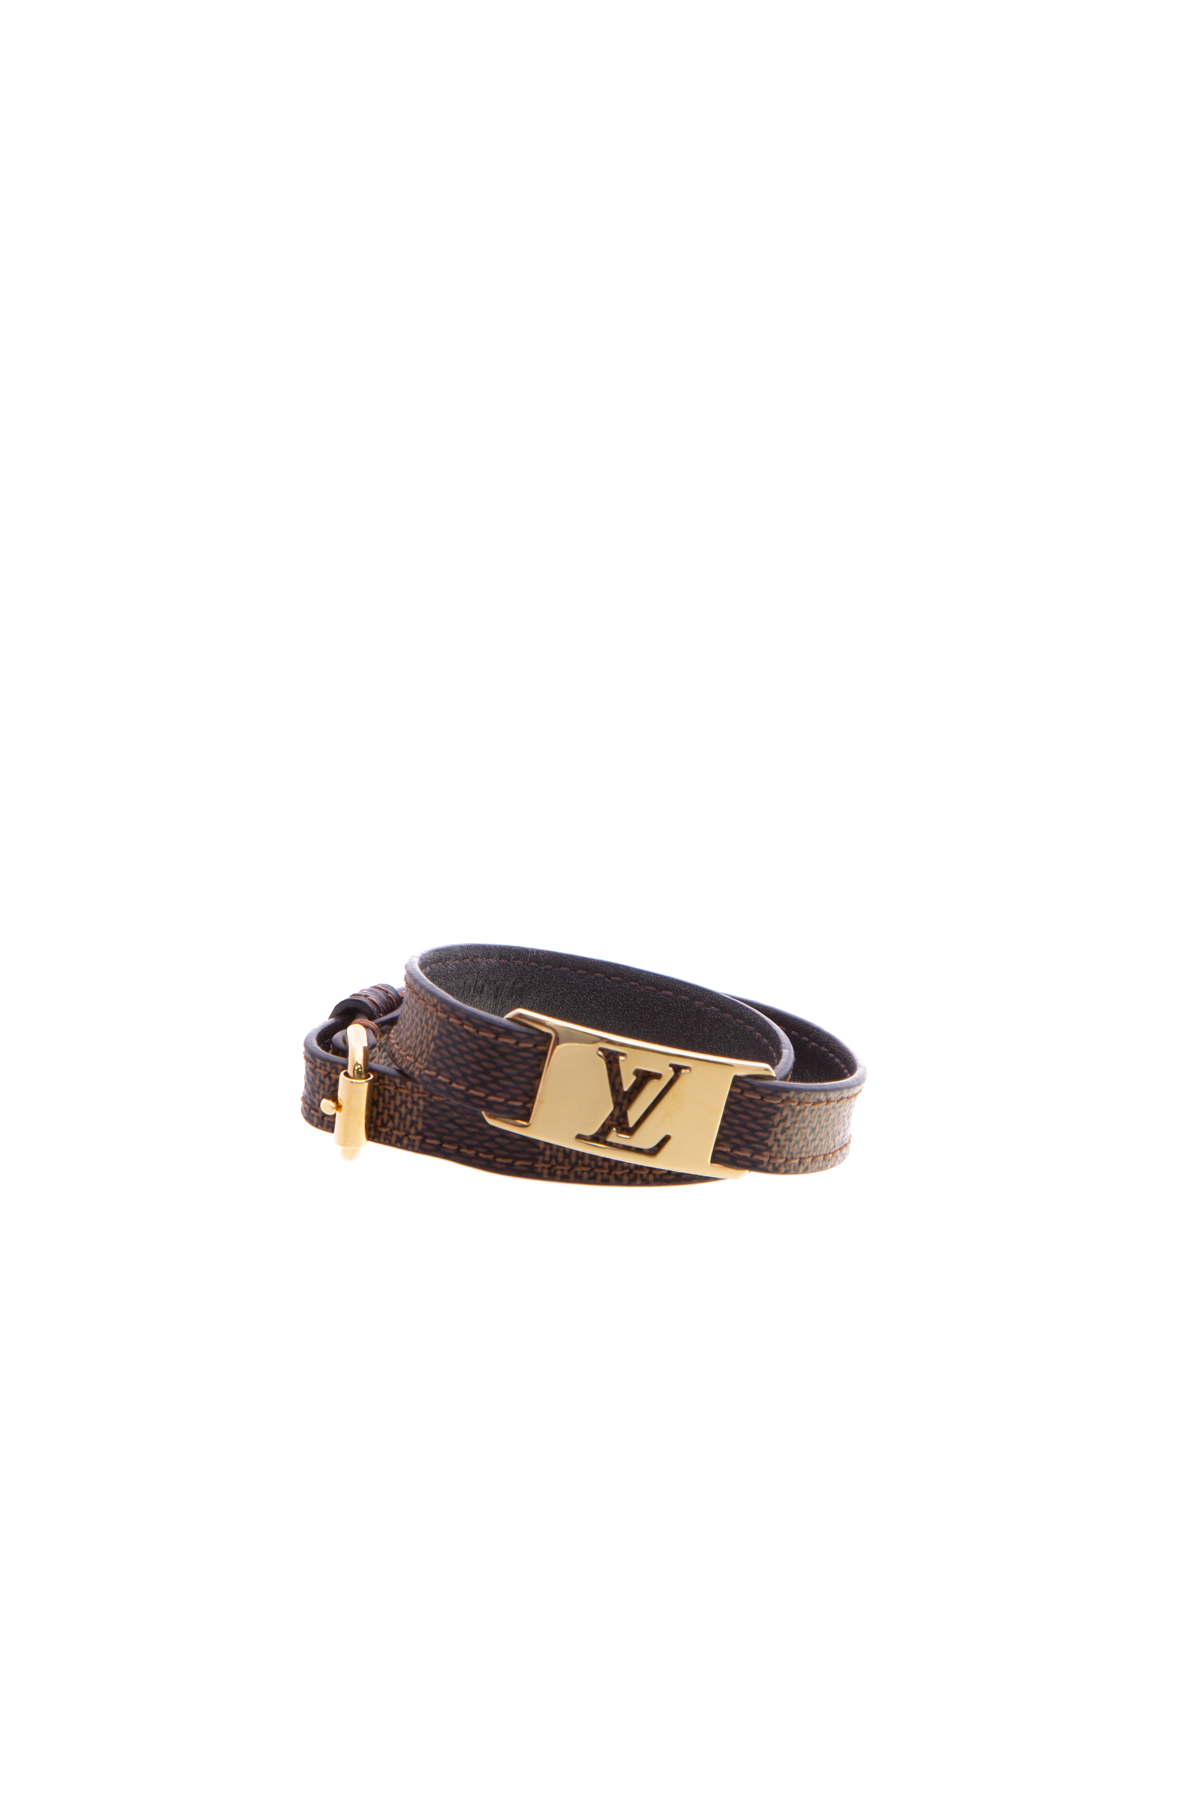 DropsByJay on X: Supreme x Louis Vuitton Box Logo Tee May Be A Sample May  Be F&F I'll get The Info  / X